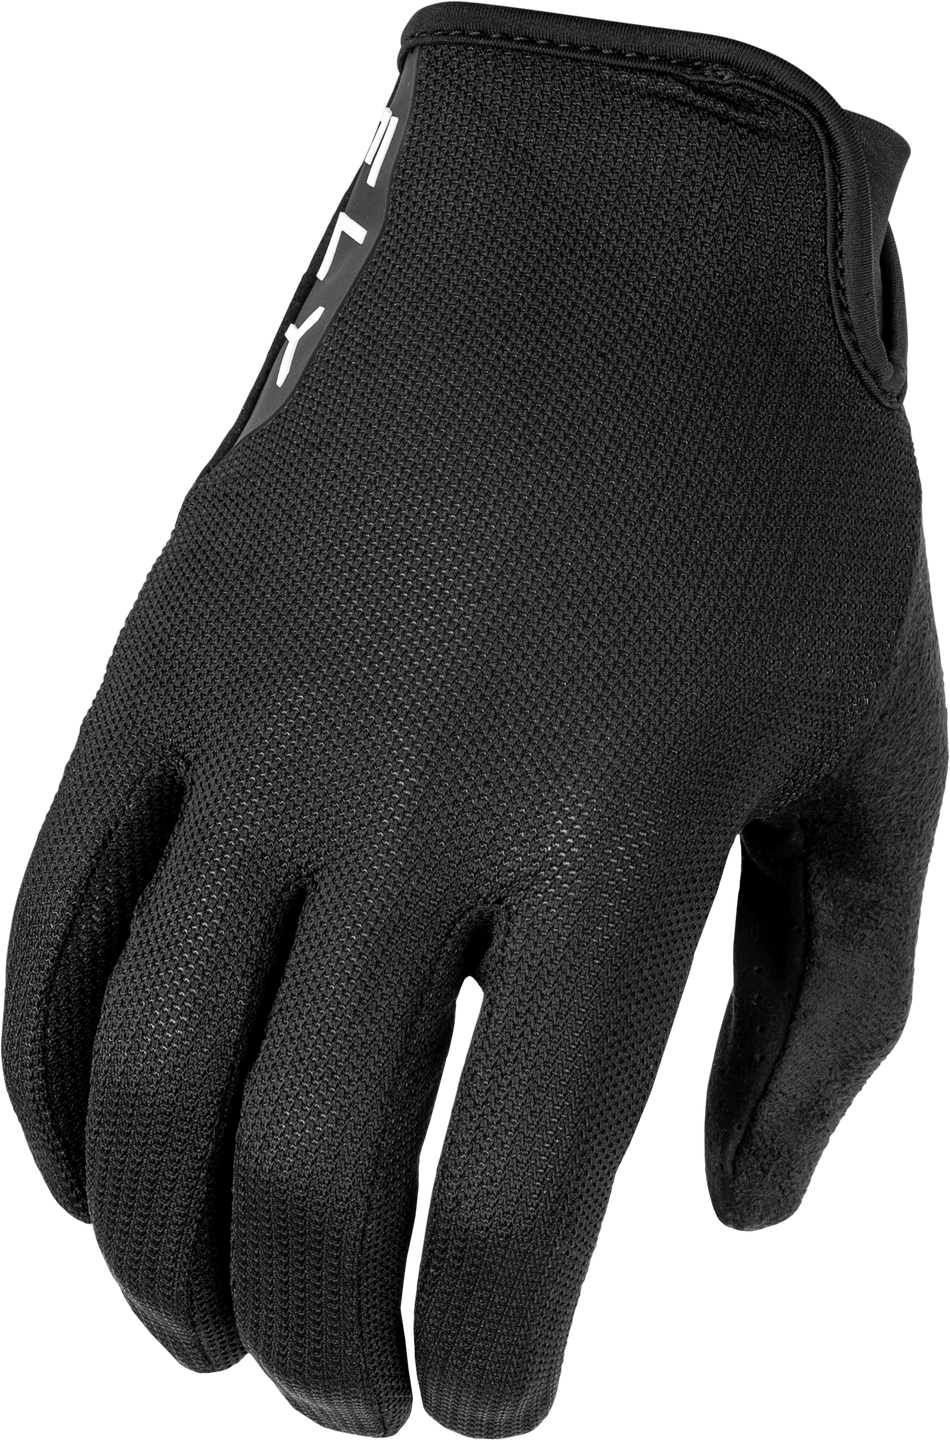 FLY RACING Mesh Gloves Black 2x 375-3302X